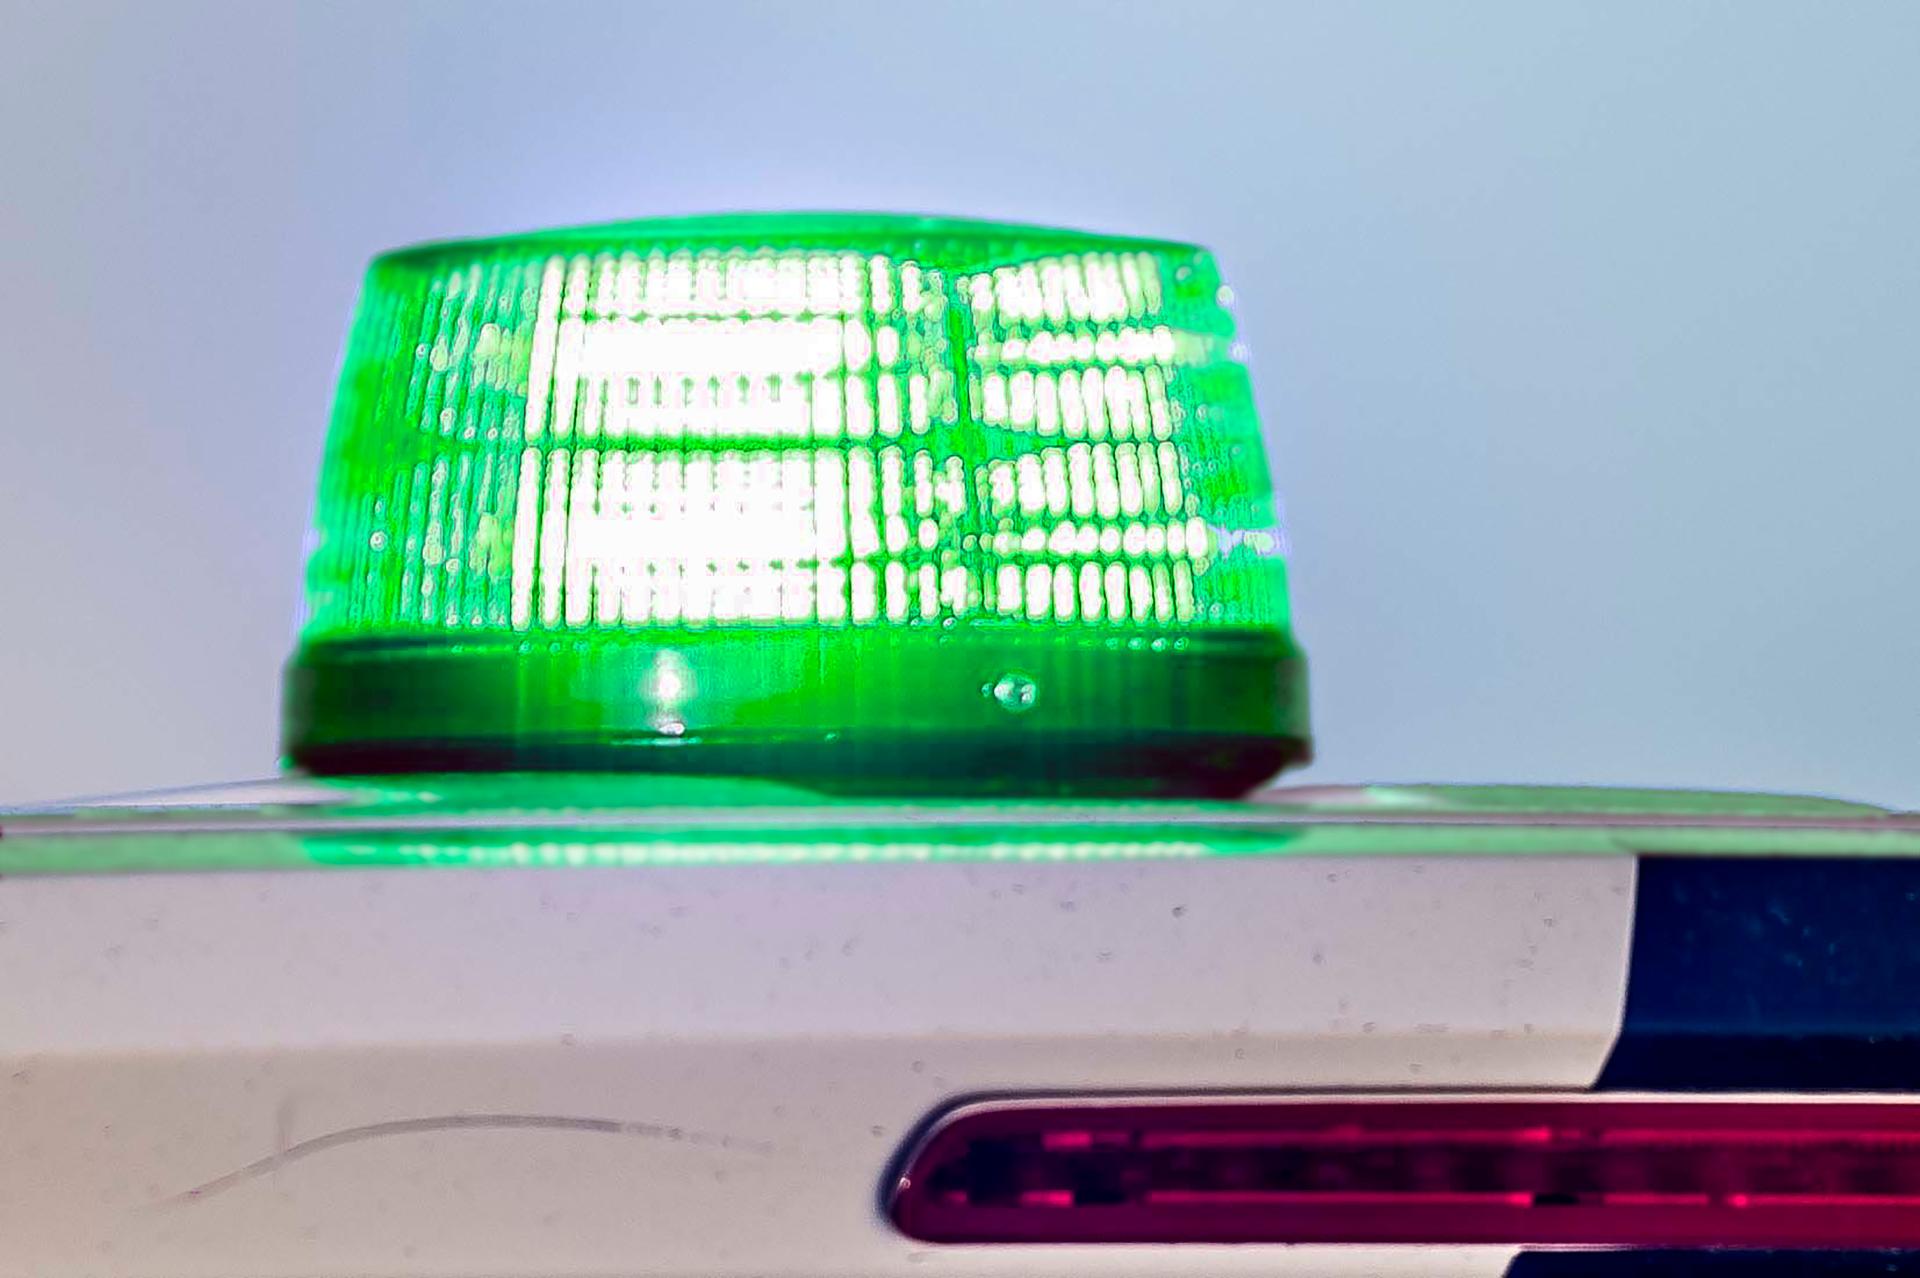 Adkomsten til et grønt blinklys skal være lige så ukompliceret som at købe en havebænk. Det kan man som bekendt uden tilladelse, det bliver først et problem hvis man anbringer den for tæt på en søbred.